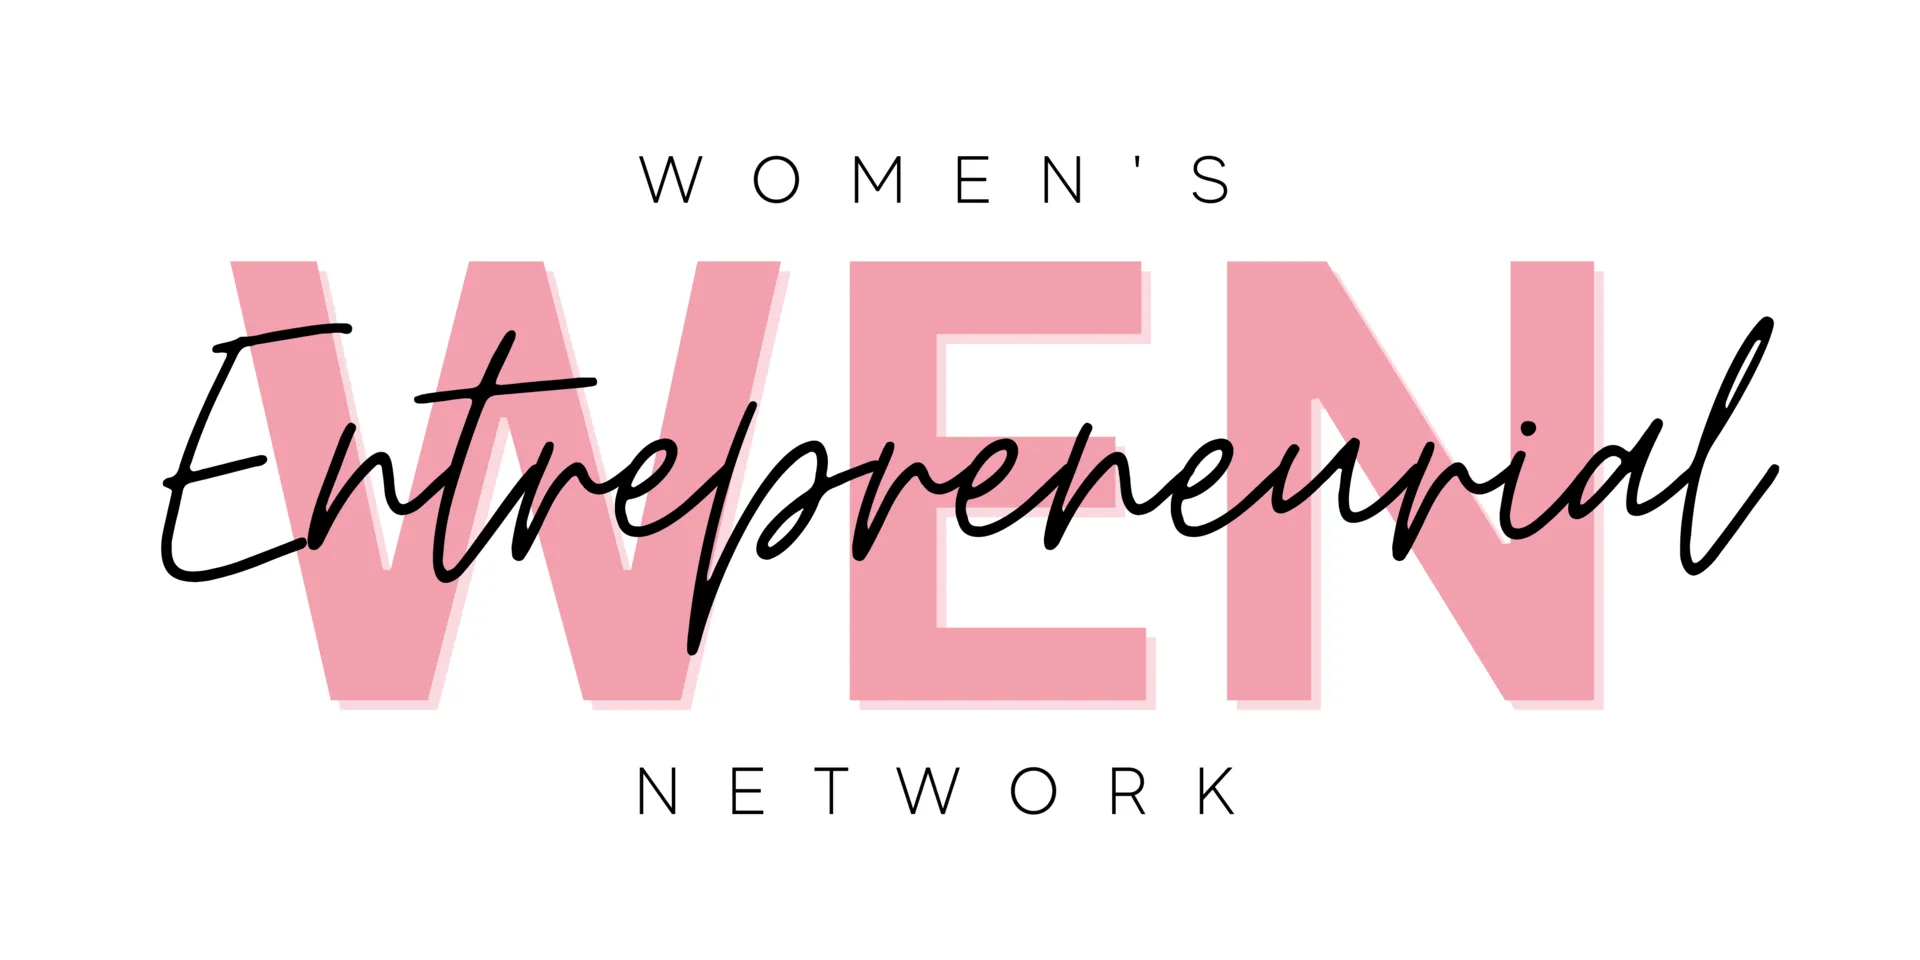 The Women's Entrepreneurial Network